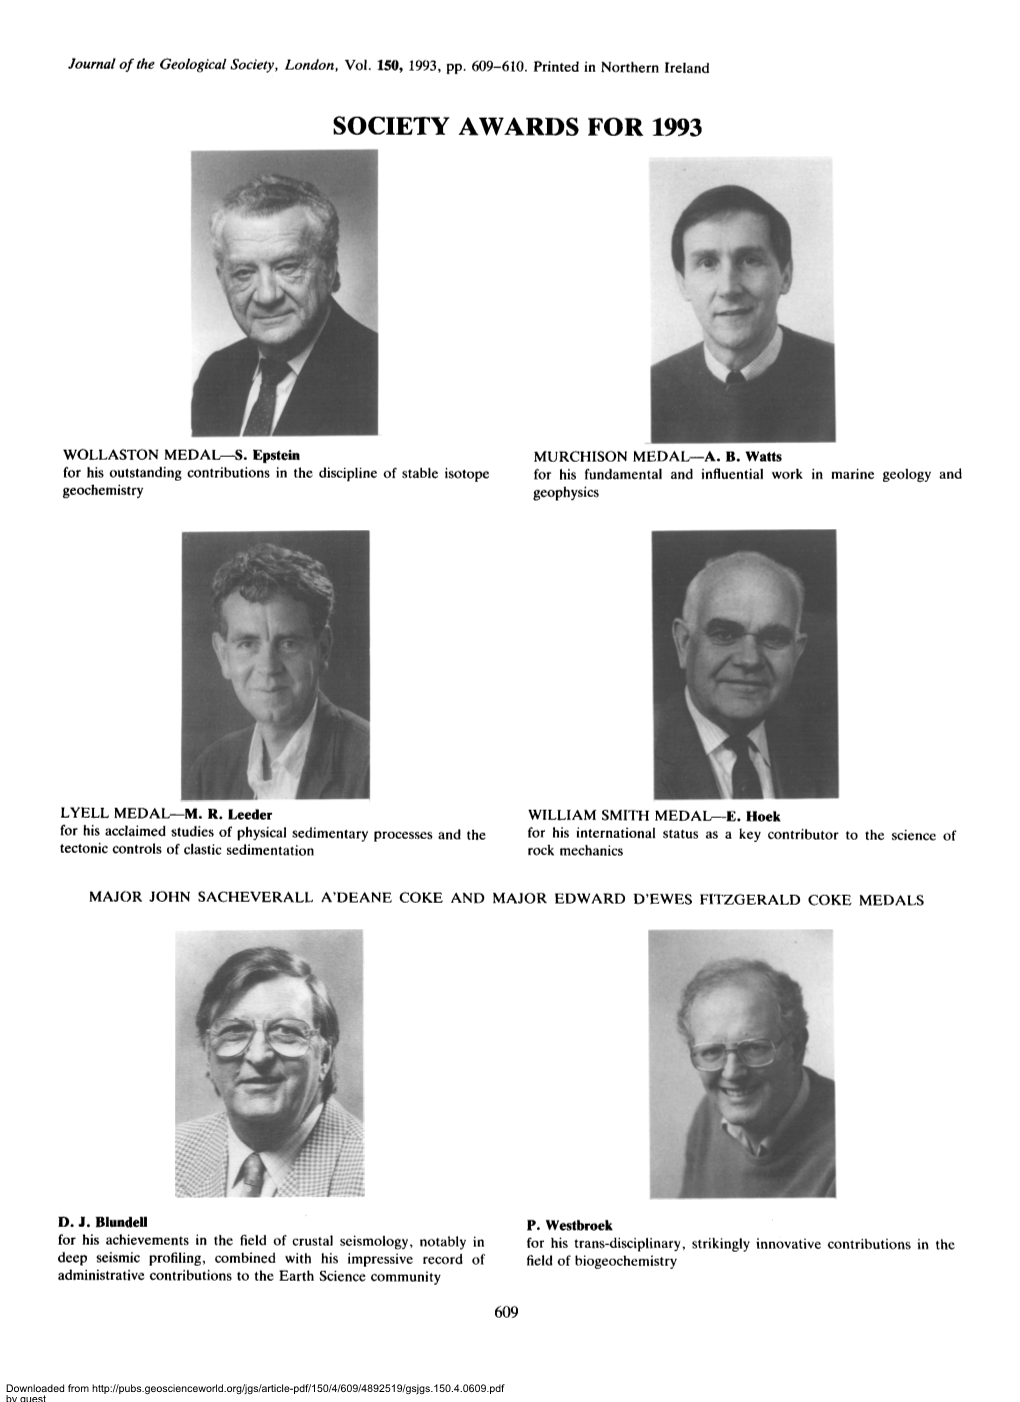 Society Awards for 1993